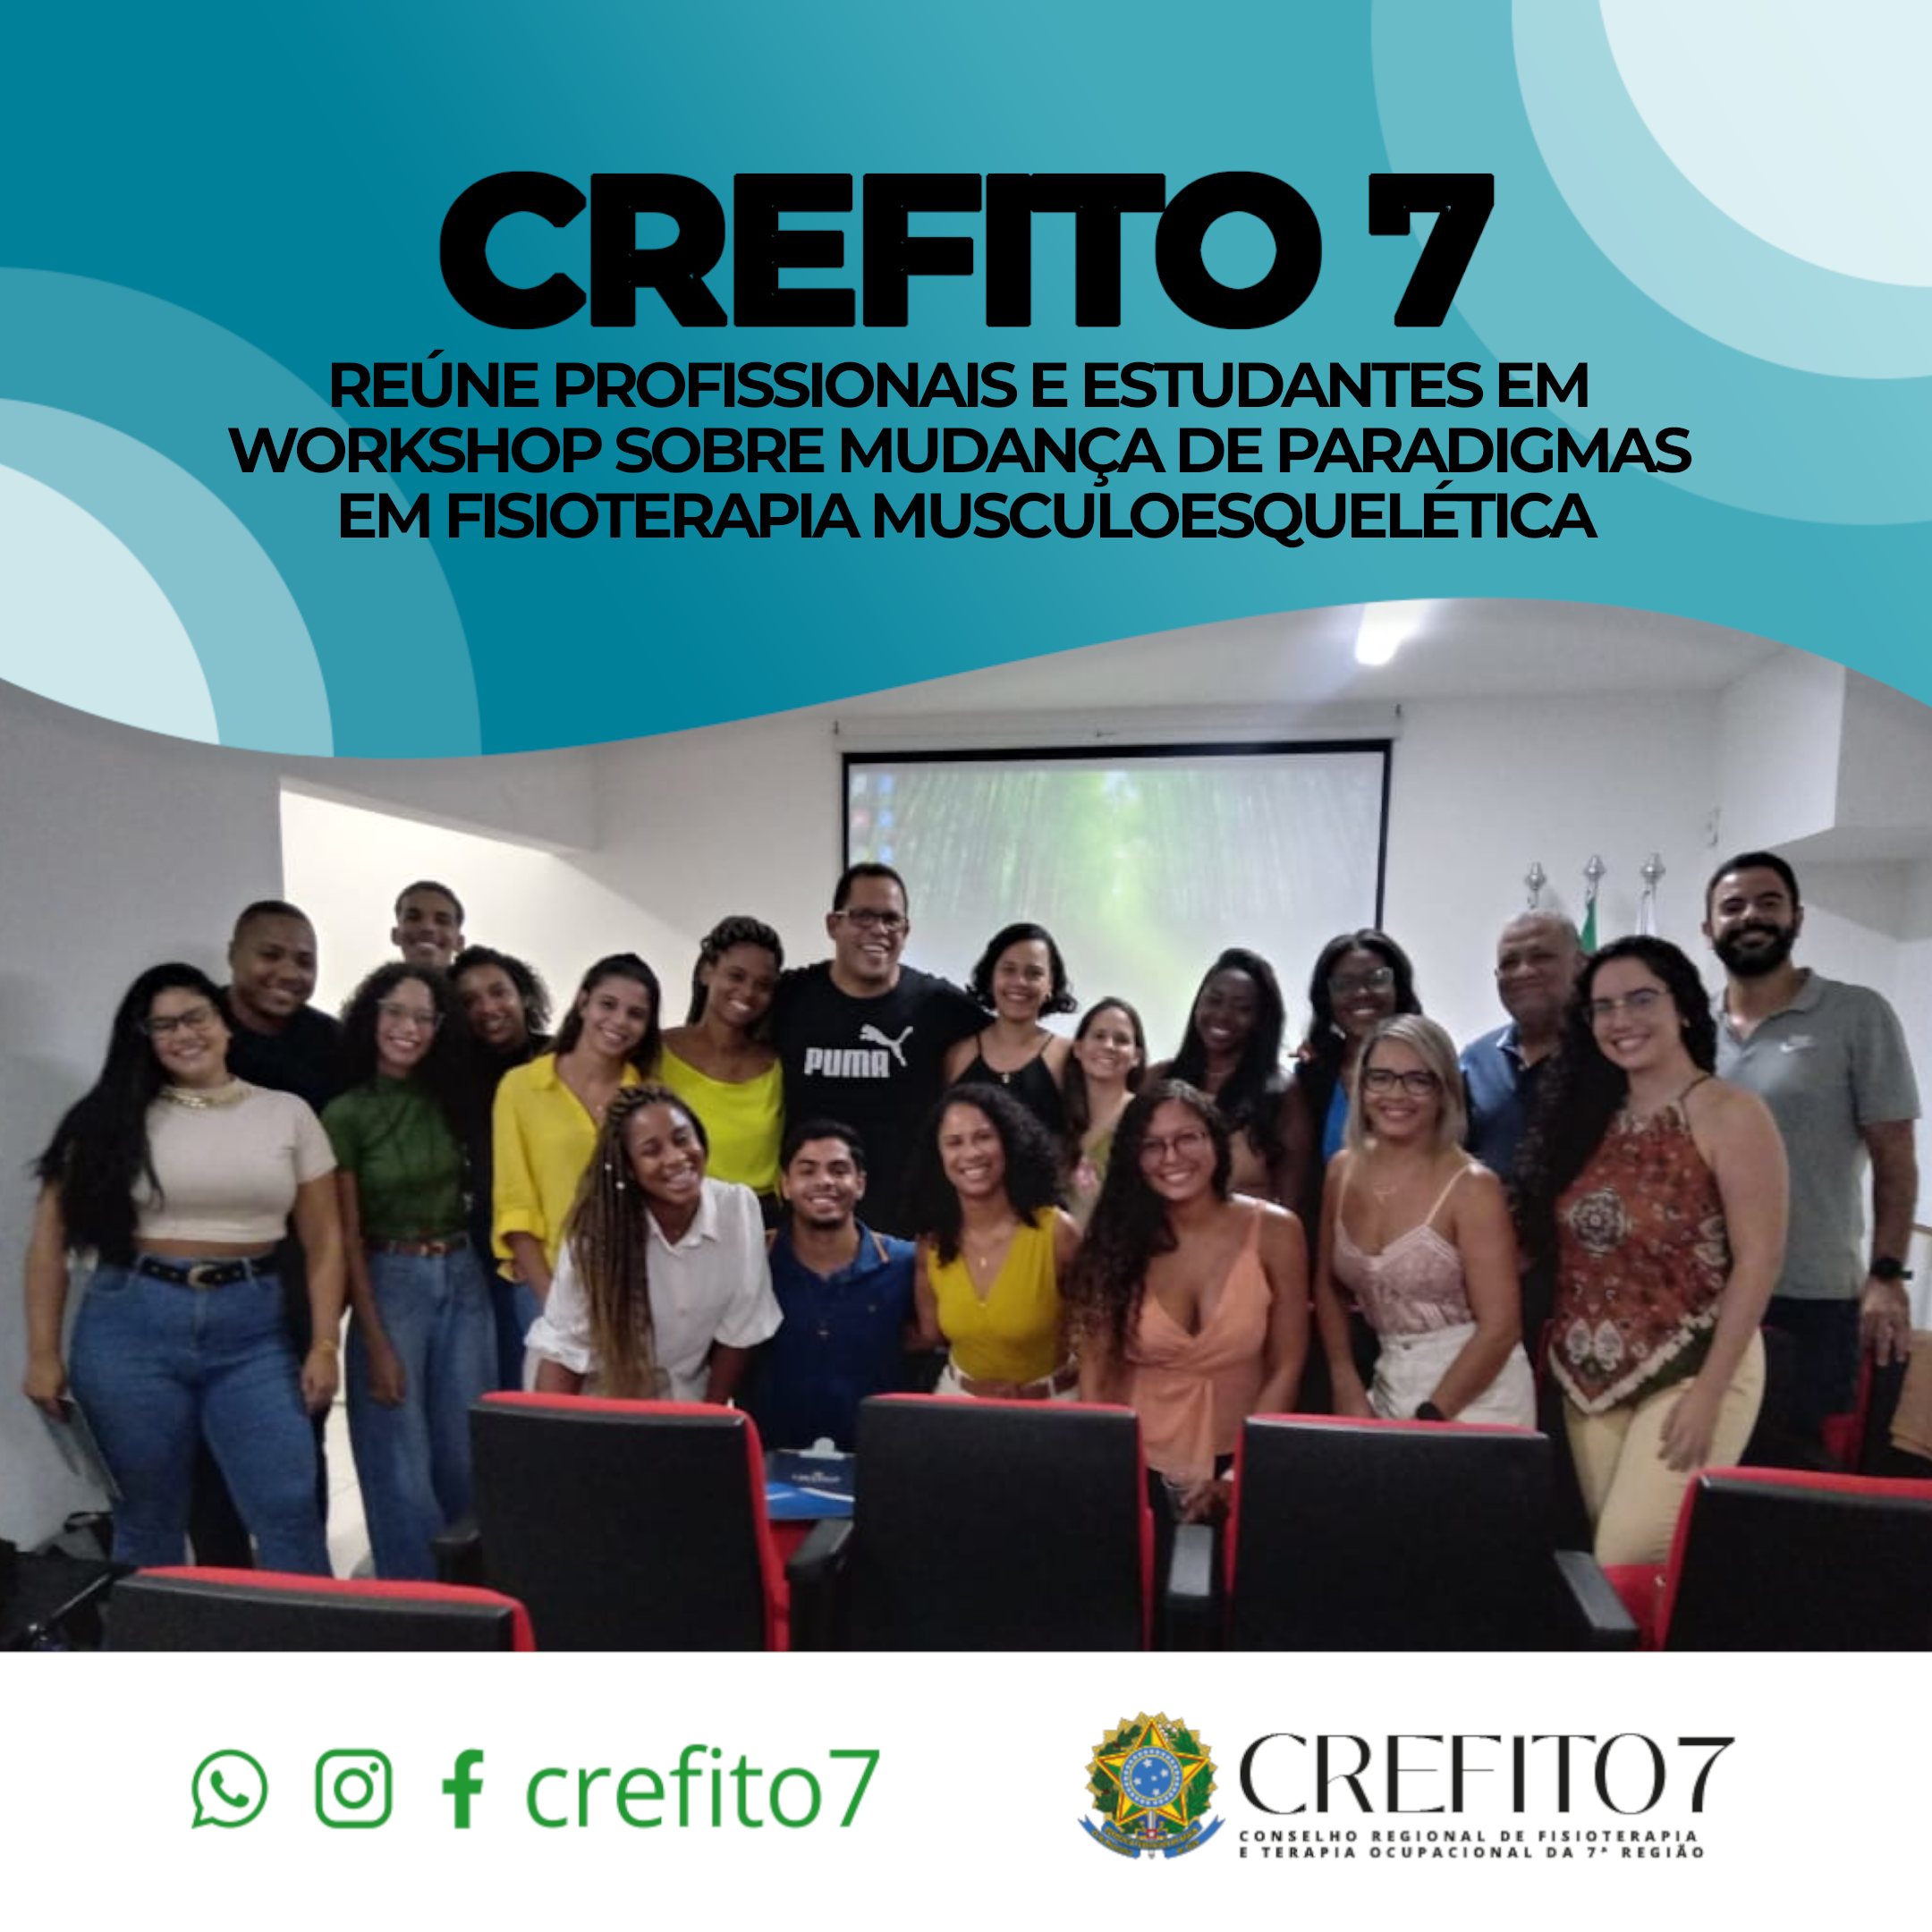 CREFITO-7 REÚNE PROFISSIONAIS E ESTUDANTES EM WORKSHOP SOBRE MUDANÇA DE PARADIGMAS EM FISIOTERAPIA MUSCOESQUELÉTICA